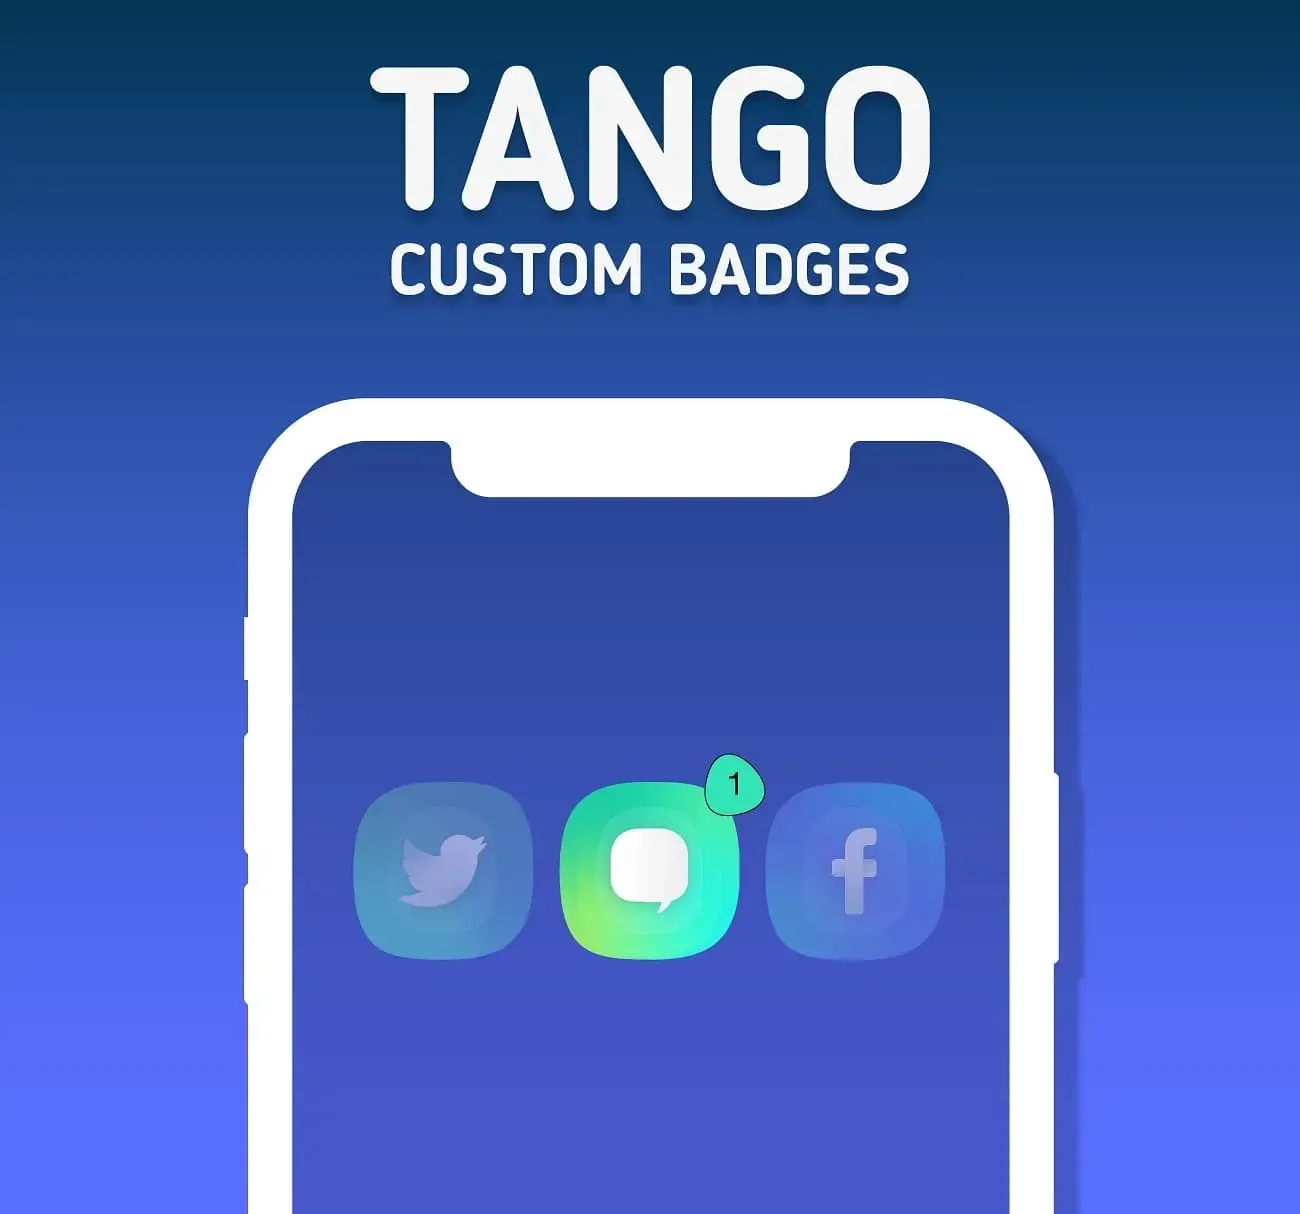 Odznaky z tématu Tango.